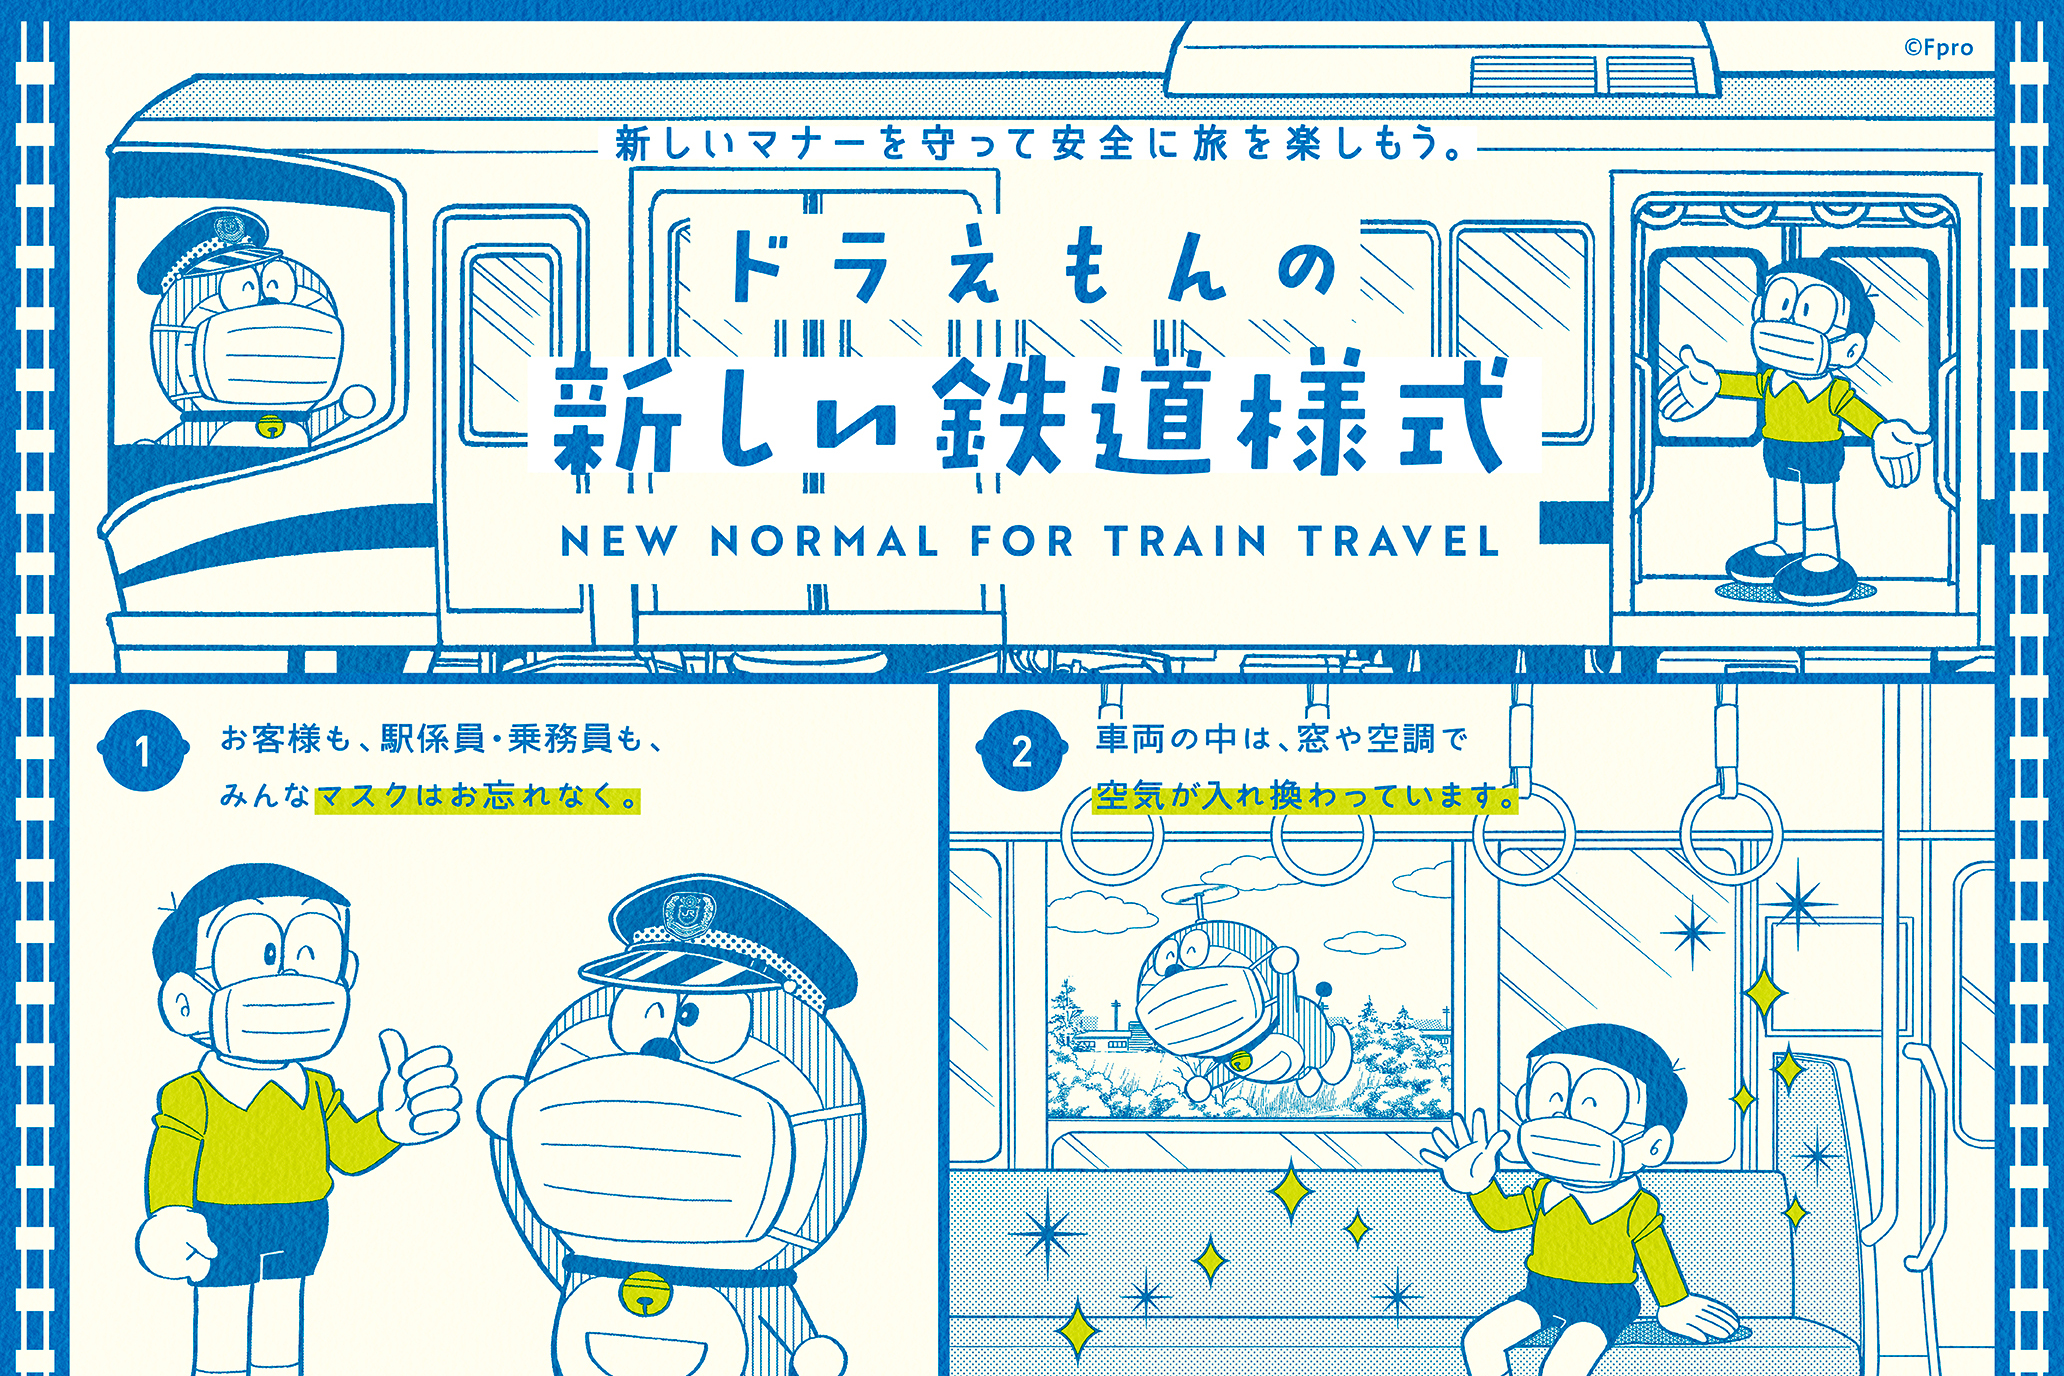 ドラえもんが教えてくれる新しい鉄道様式、JR西日本がポスターを制作